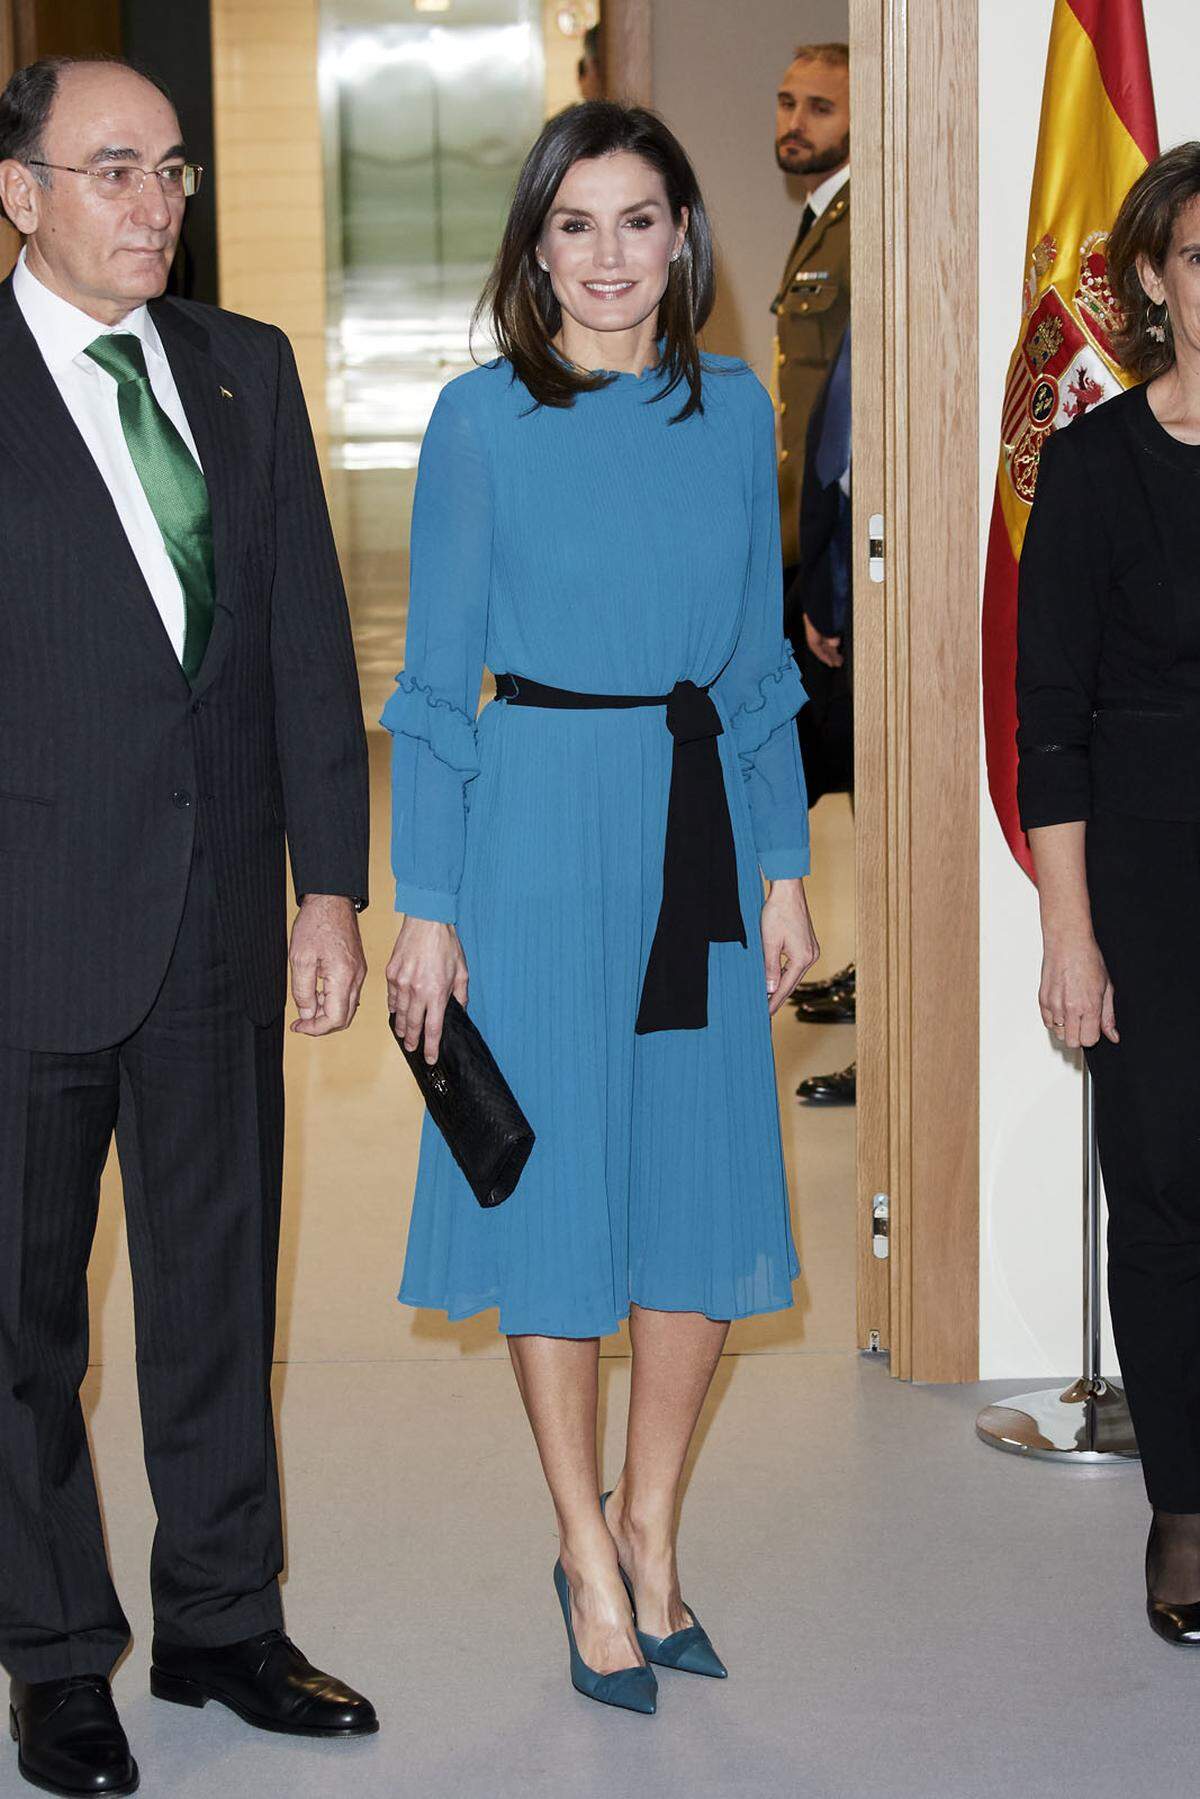 Bei den Royals muss es in Sachen Mode nicht immer das teuerste vom teuersten sein. Königin Letizia von Spanien greift etwa gerne auf die spanische Textilkette Zara zurück. So auch bei diesem Schnäppchen-Overall.  